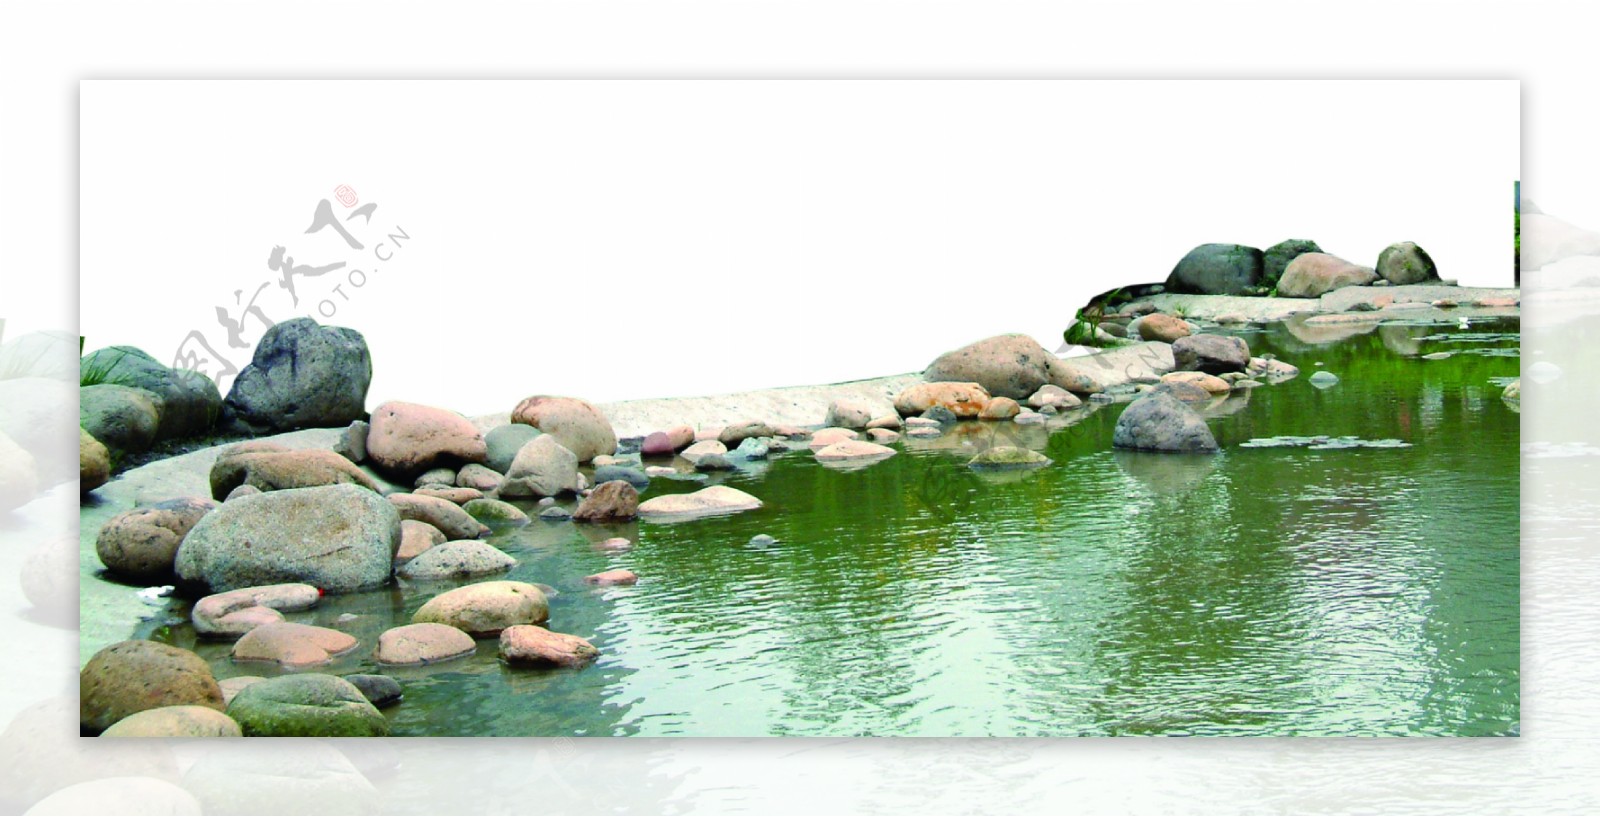 景观环境水池图片